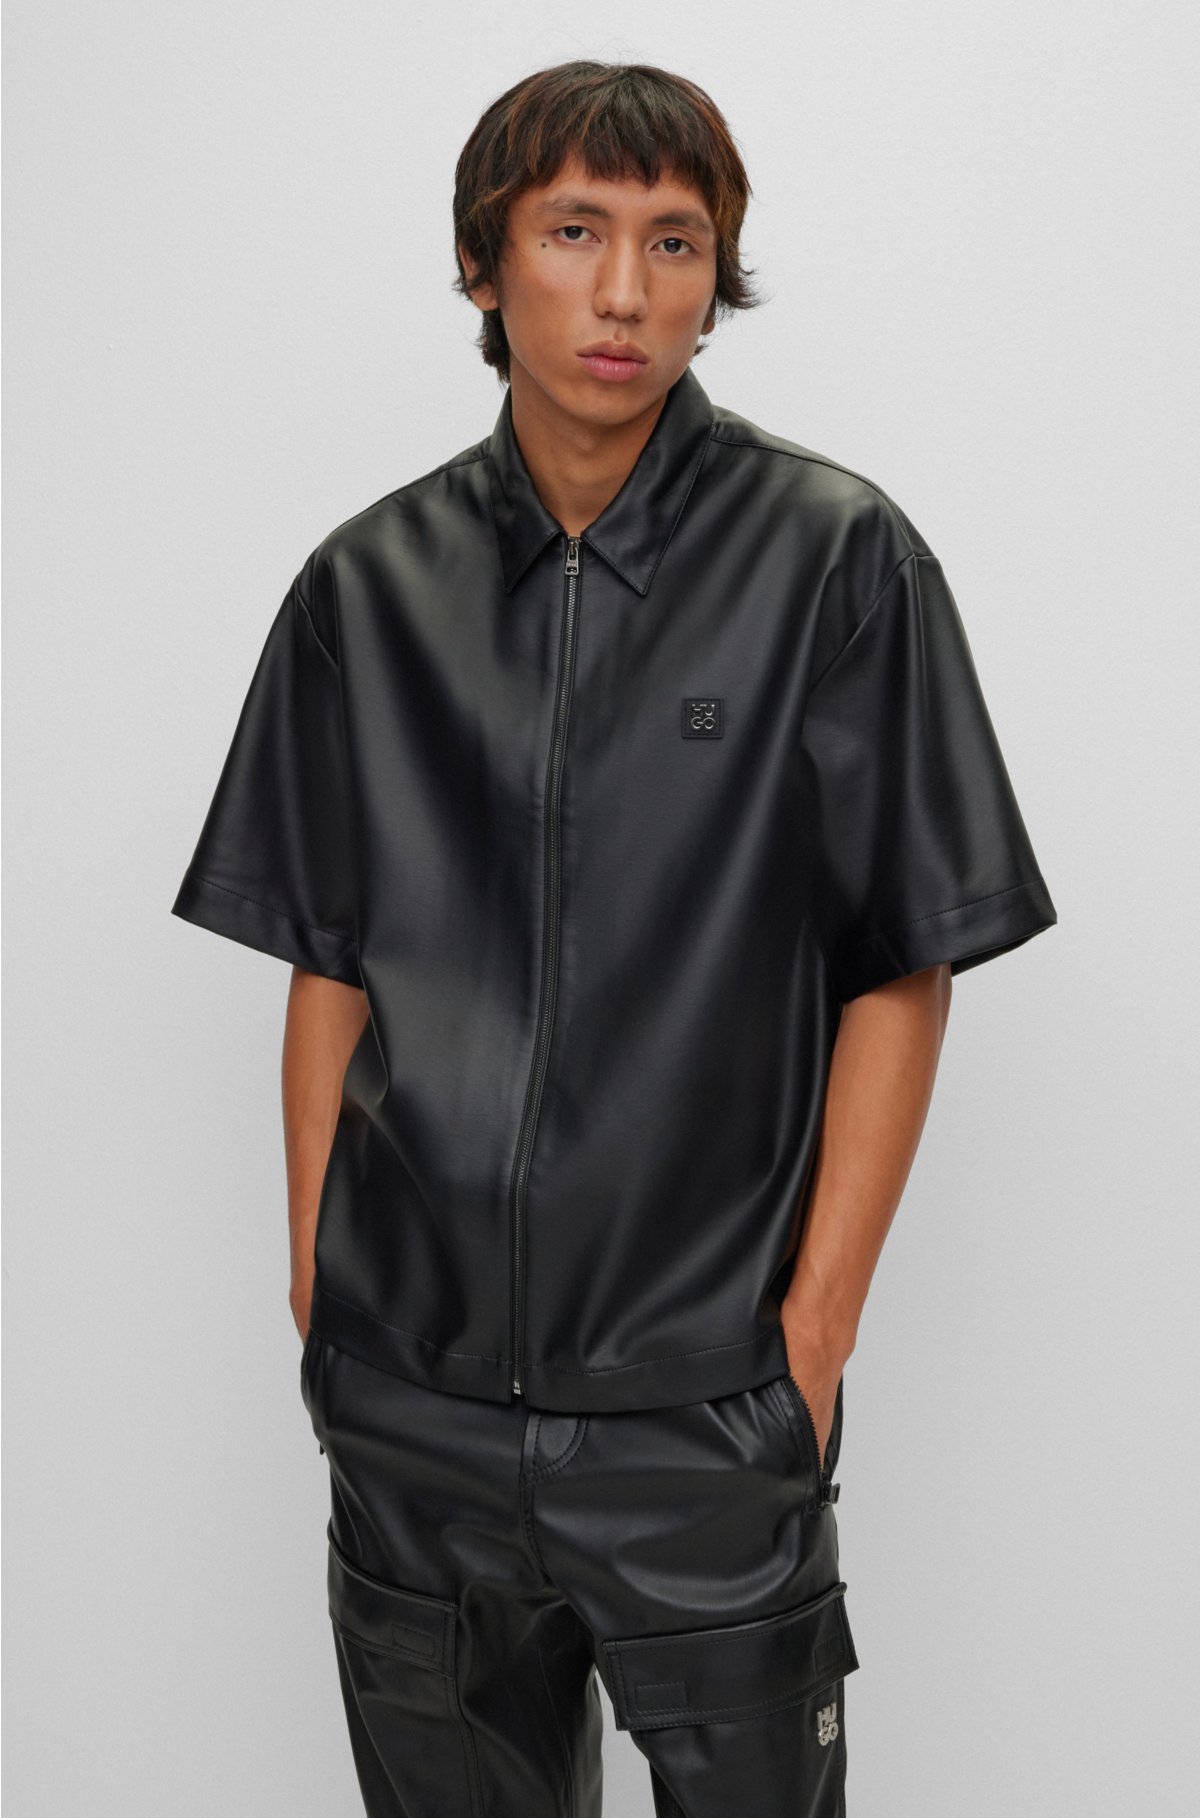 Black PU Leather Zip Front Crop Top, Crop Tops